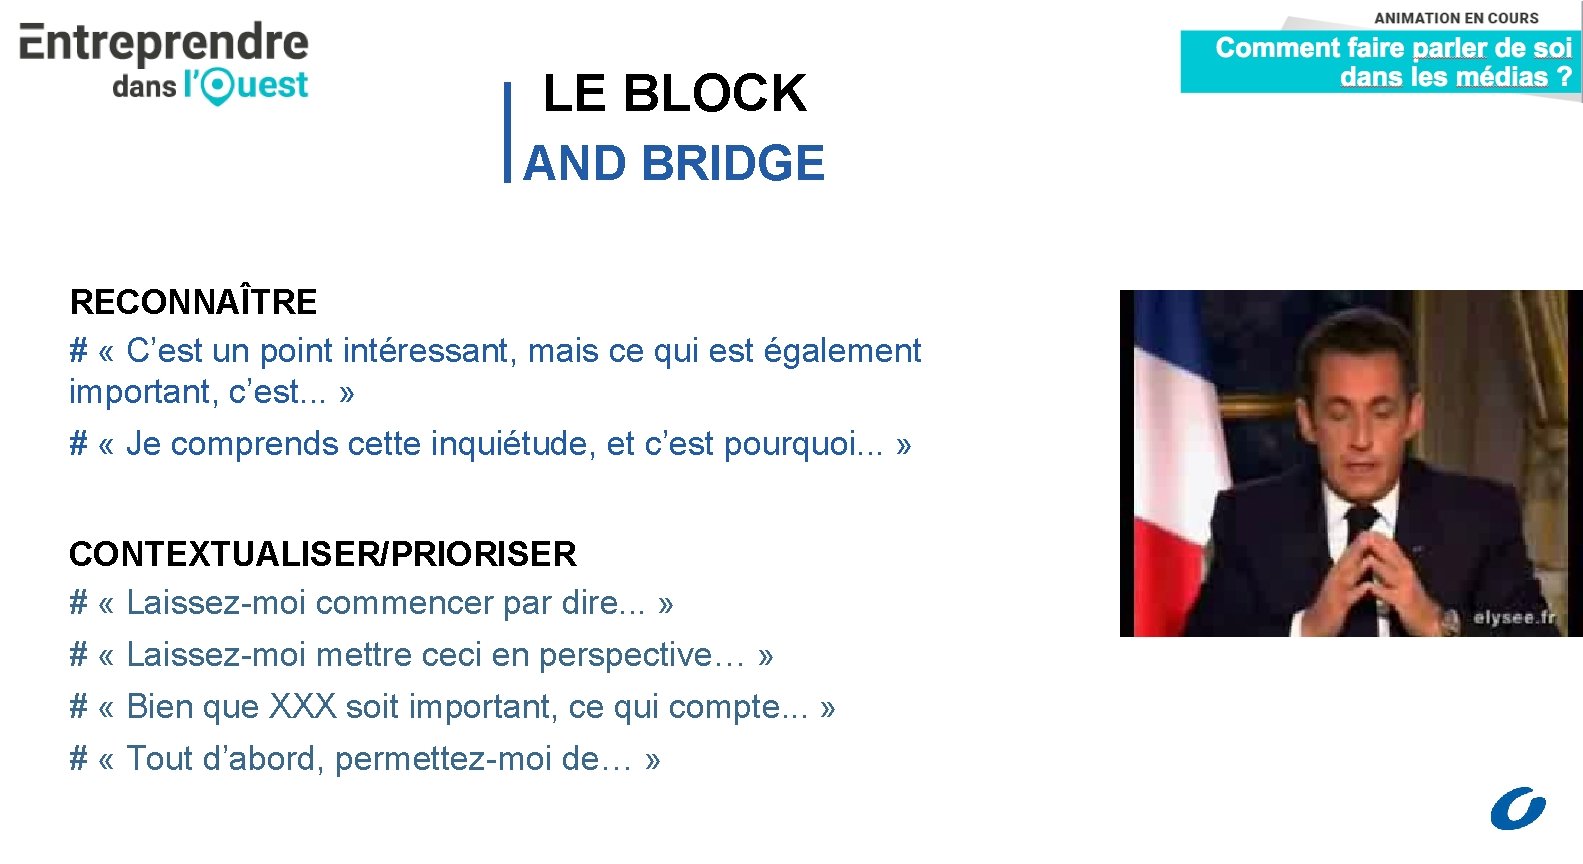 LE BLOCK AND BRIDGE RECONNAÎTRE # « C’est un point intéressant, mais ce qui